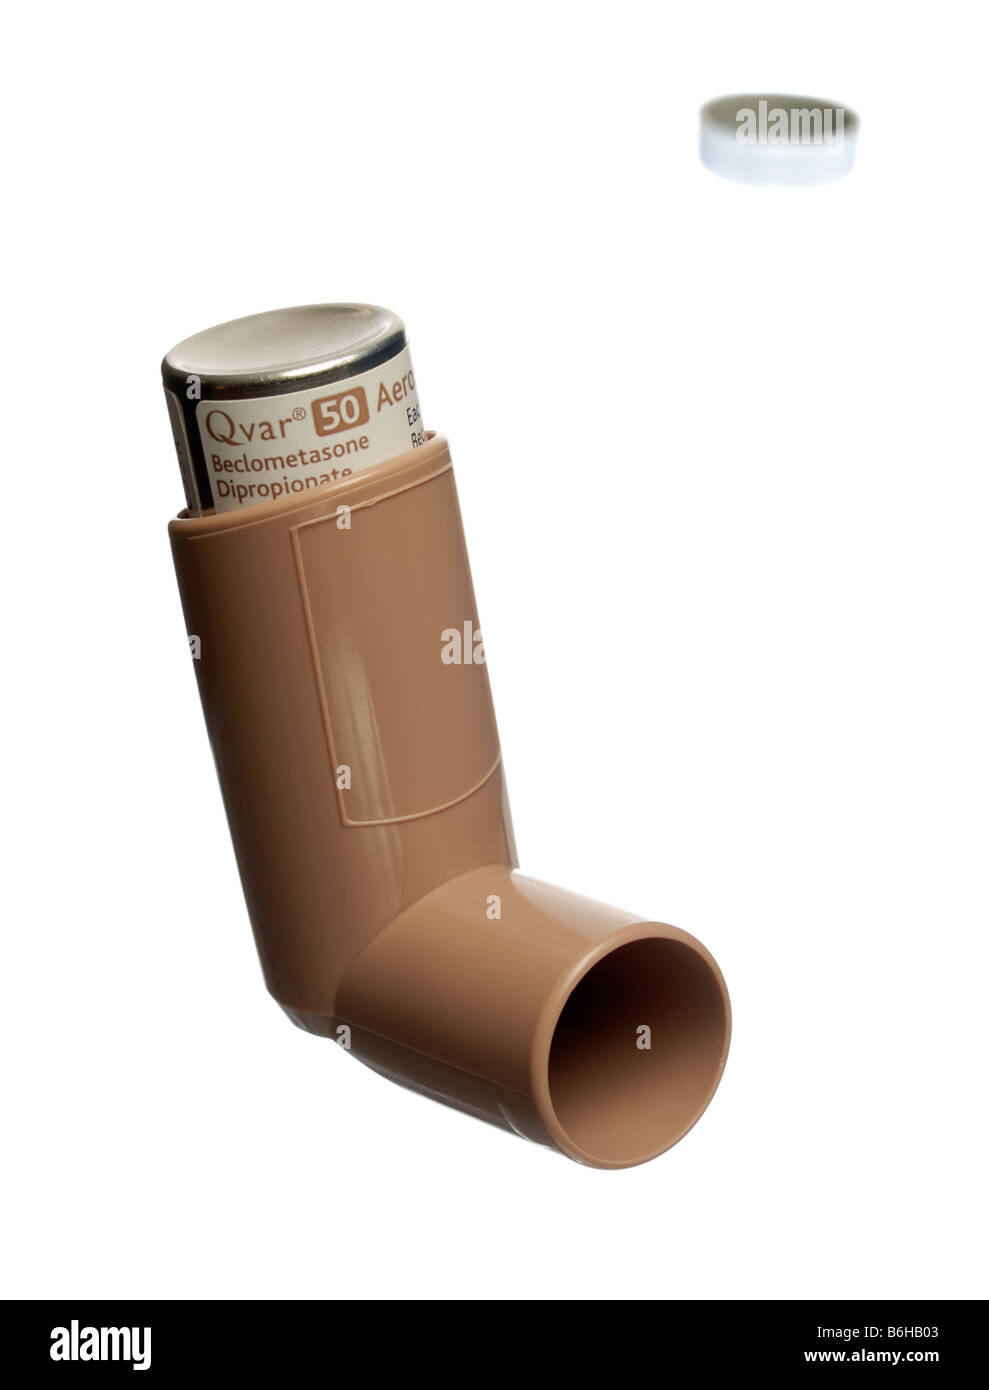 QVar Beclometasone Dipropionate inhaler Stock Photo